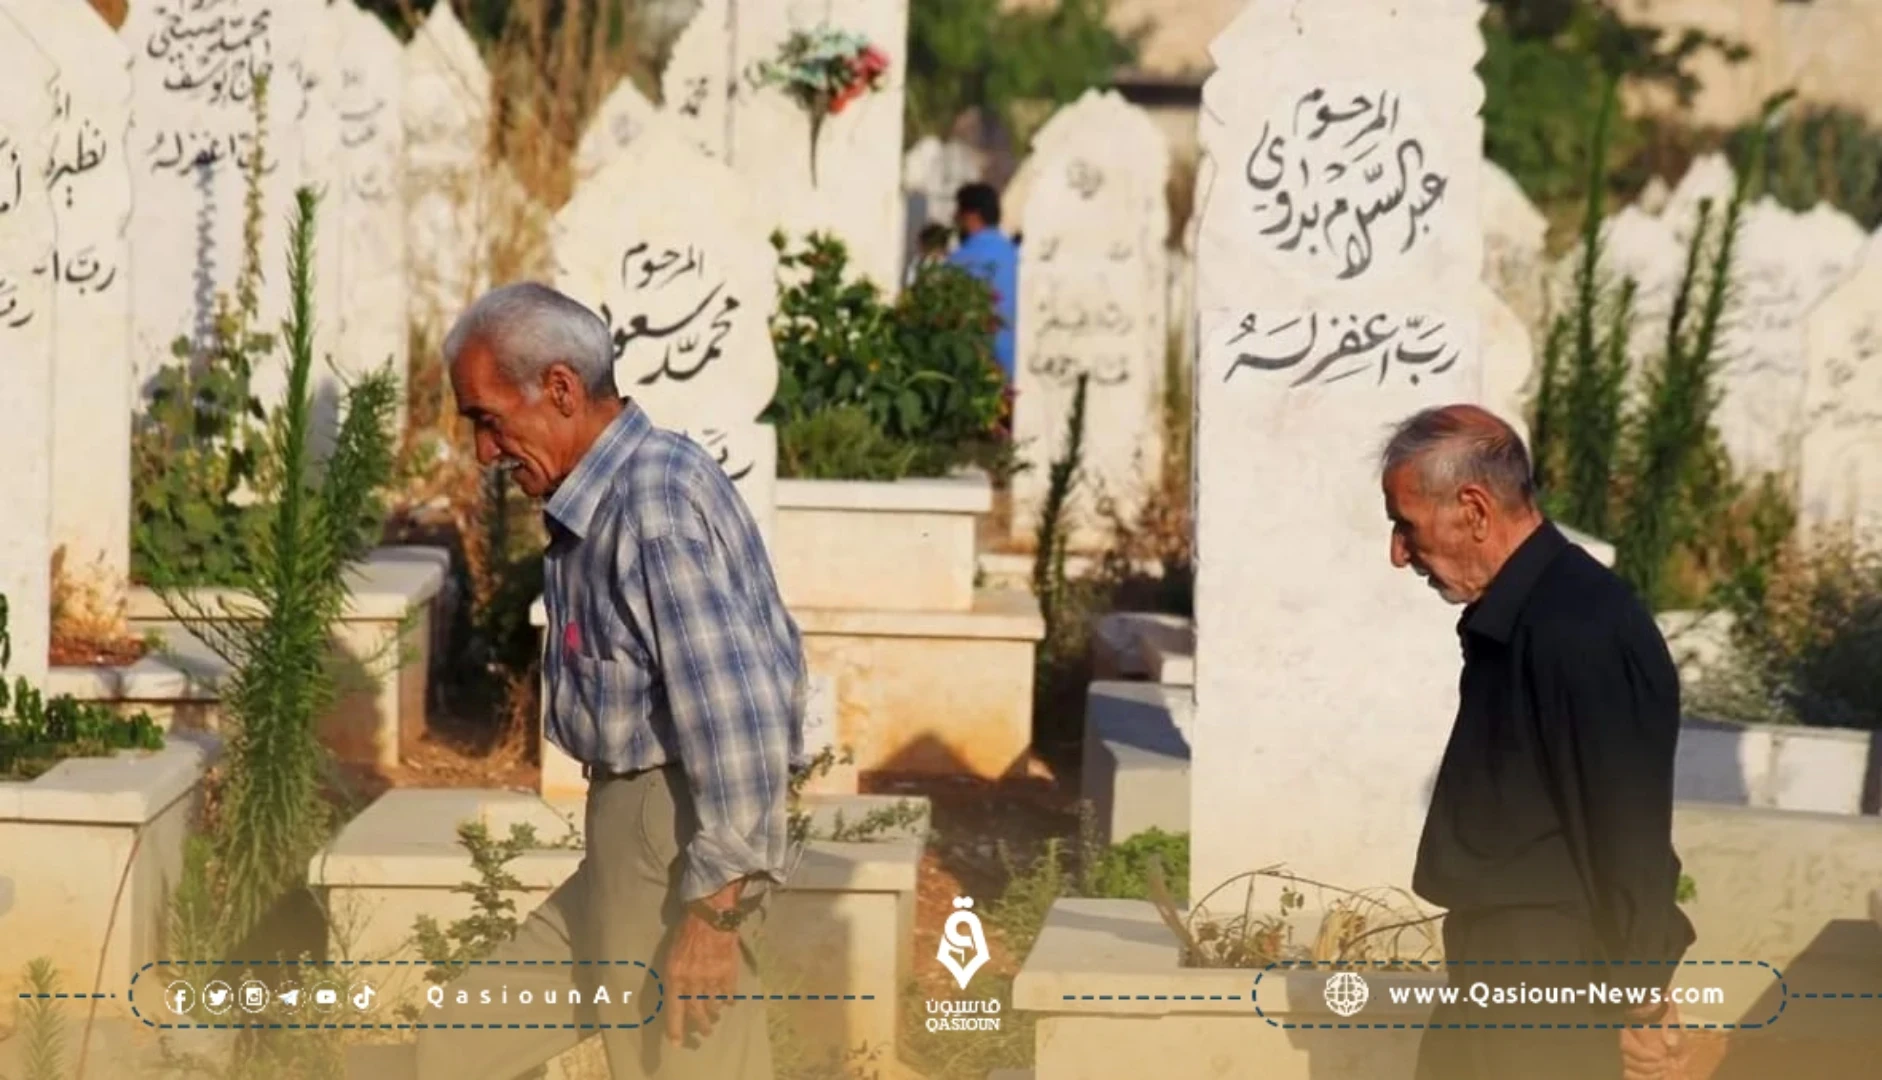 ثمن القبر الواحد في دمشق يصل لـ 150 مليون ليرة